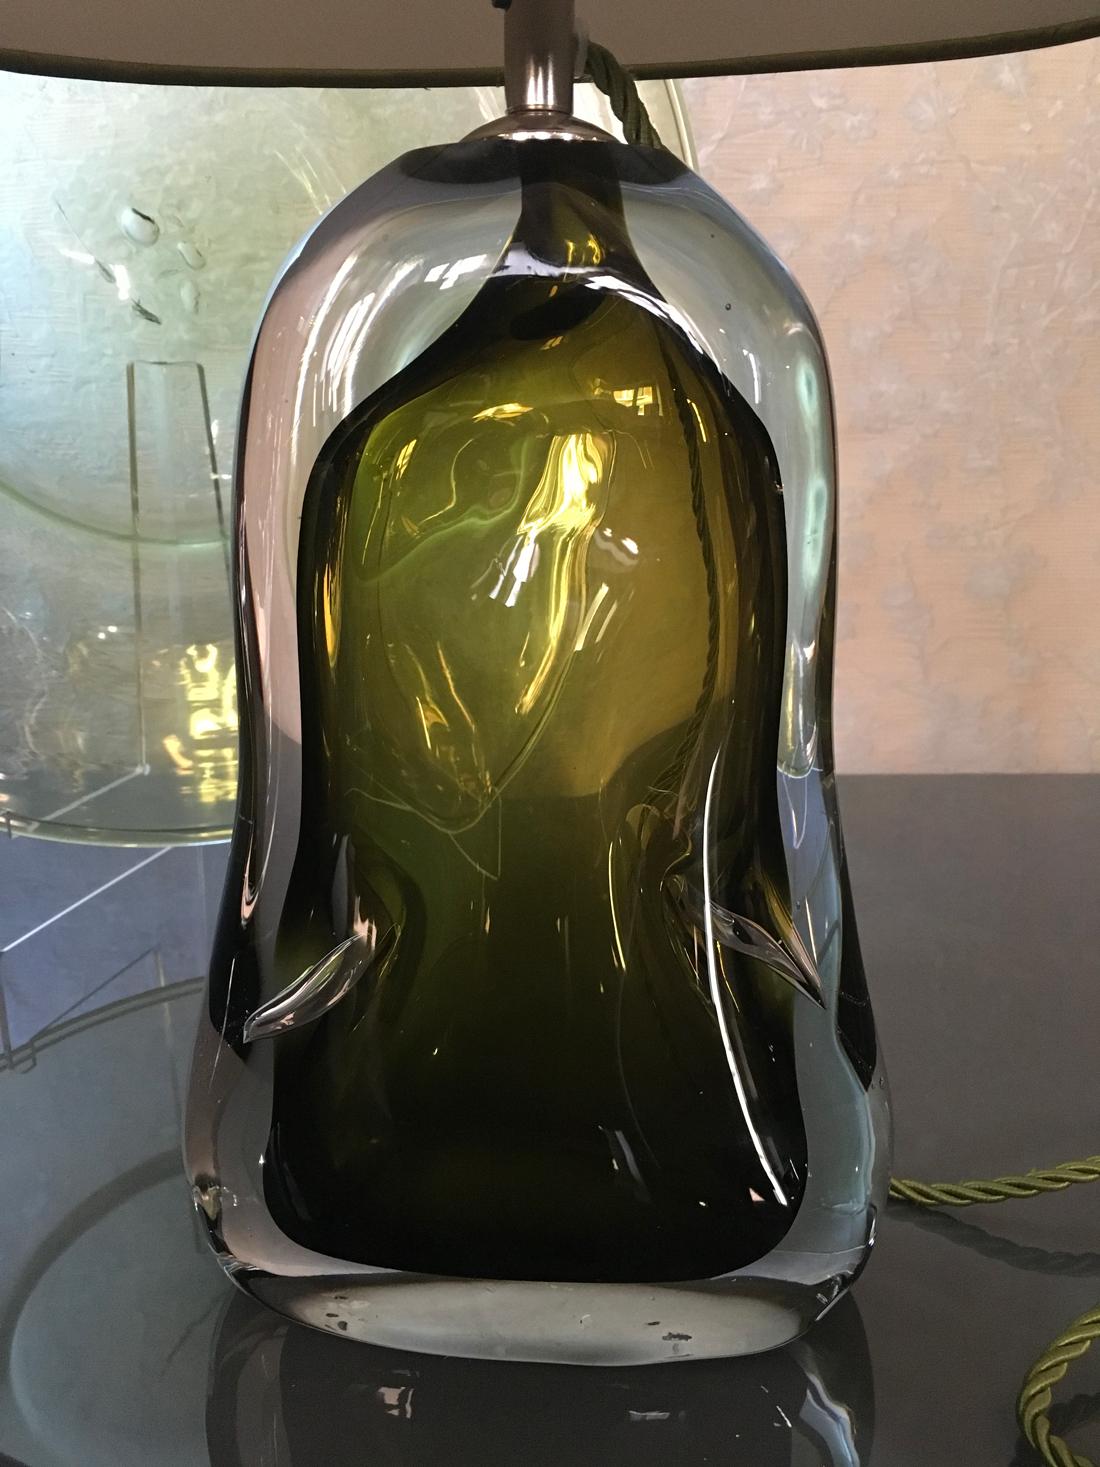 Diese einnehmende und zeitgenössische Tischlampe aus grünem mundgeblasenem Glas ist ein Stück hoher Handwerkskunst und wurde im Vereinigten Königreich hergestellt.
Diese Tischleuchte kann aufgrund der soliden Präsenz des handgefertigten